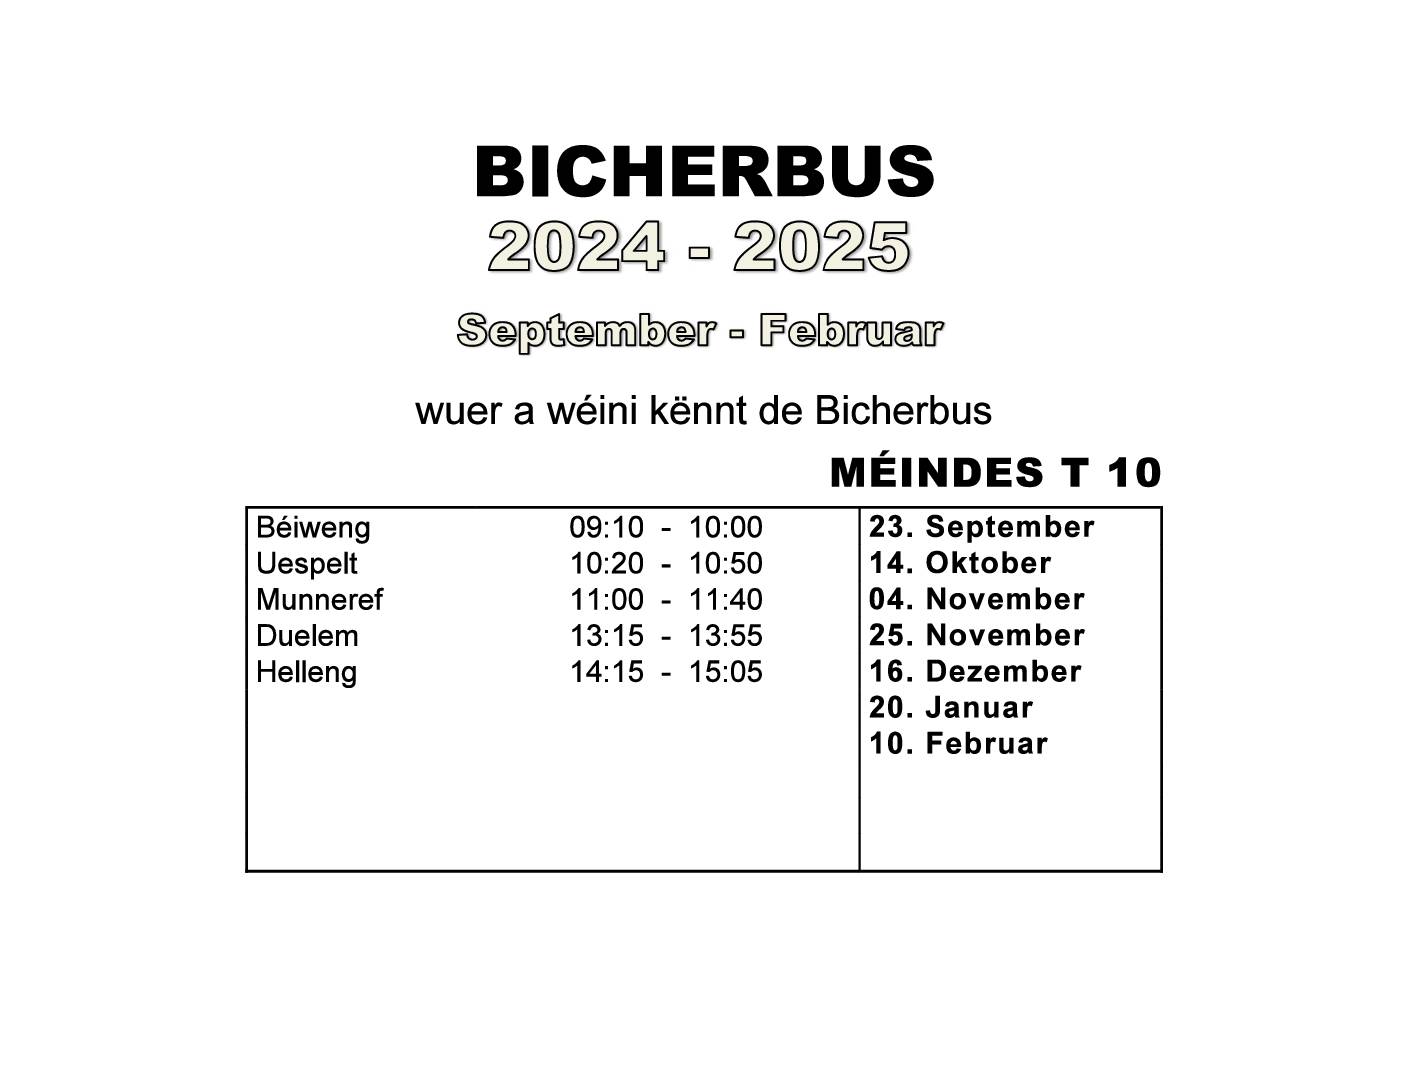 Bicherbus September 2024 - Februar 2025